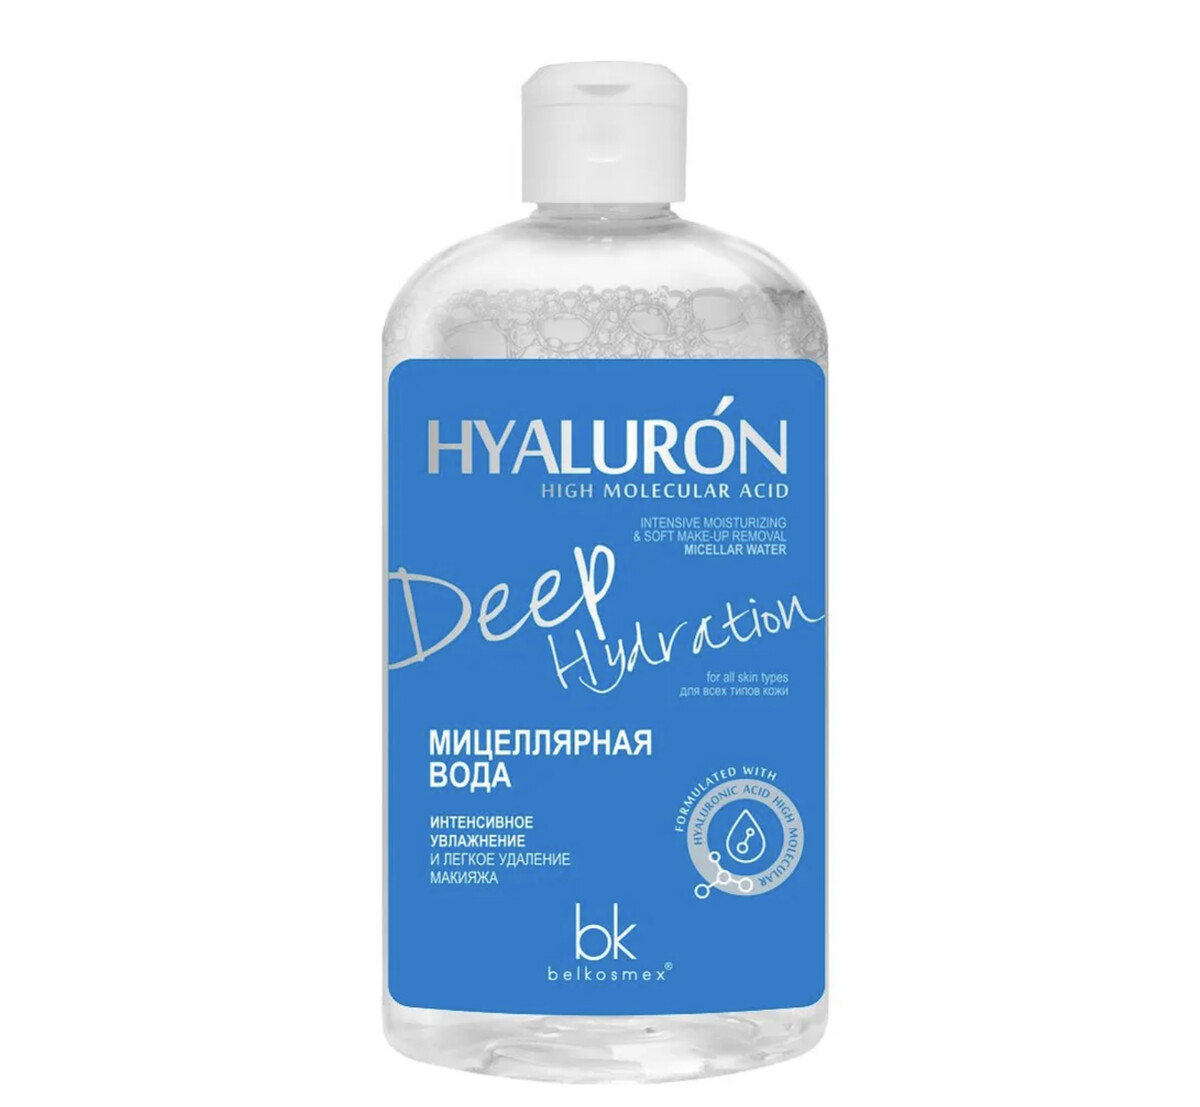 Hialuron deep hydration мицеллярная вода интенсивное увлажнение 500г лак акриловый матовый на водной основе 500 мл wizzart polish 500г морозостойкий